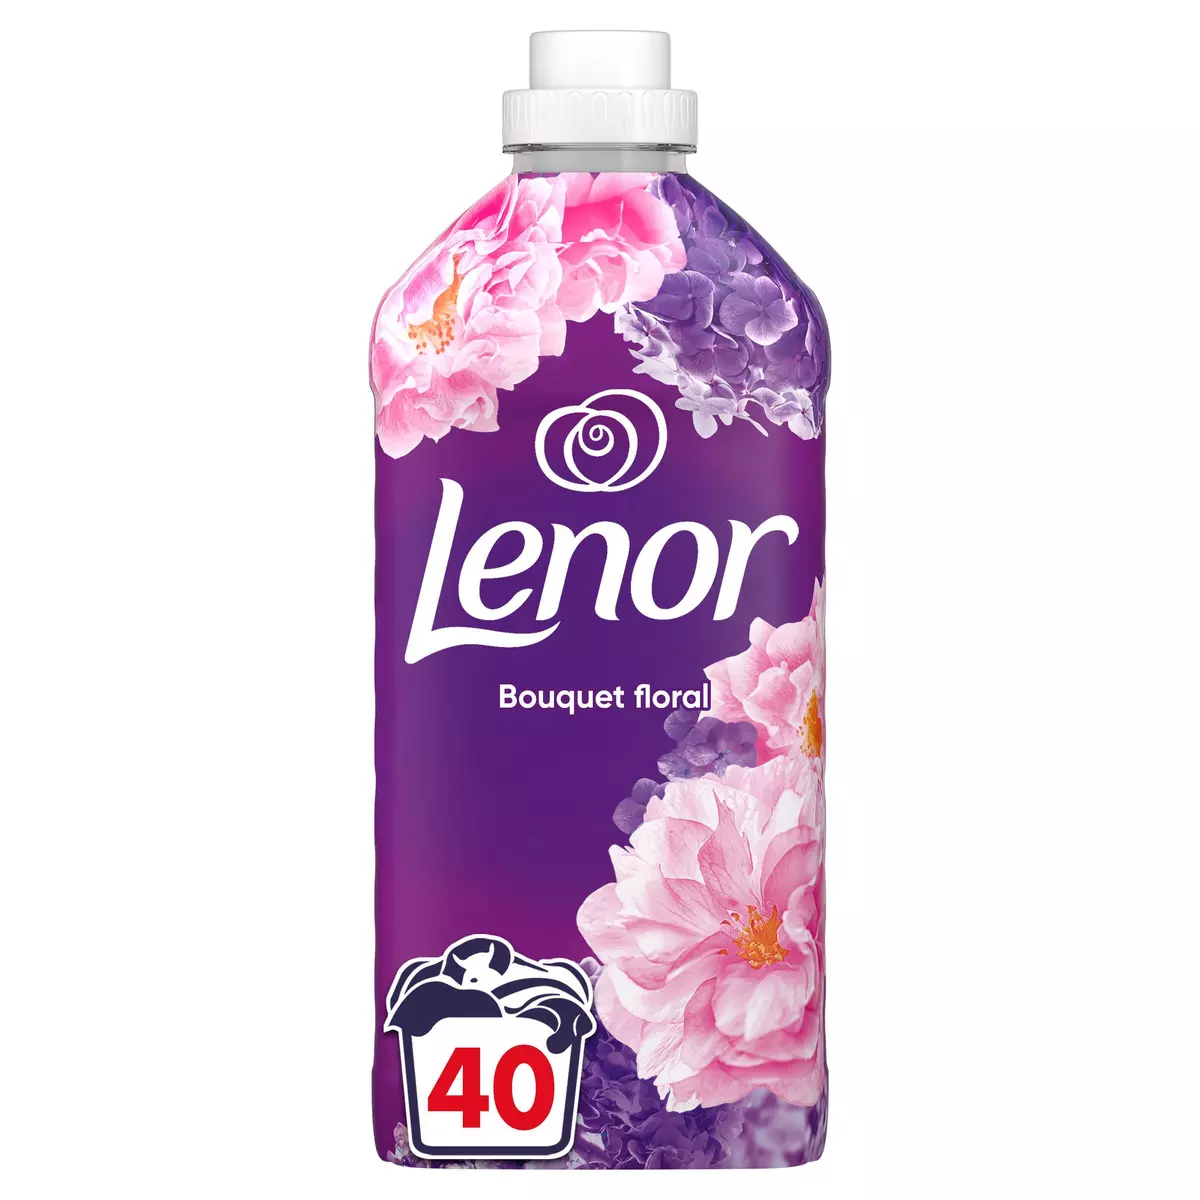 LENOR Adoucissant liquide bouquet floral 40 lavages 840ml